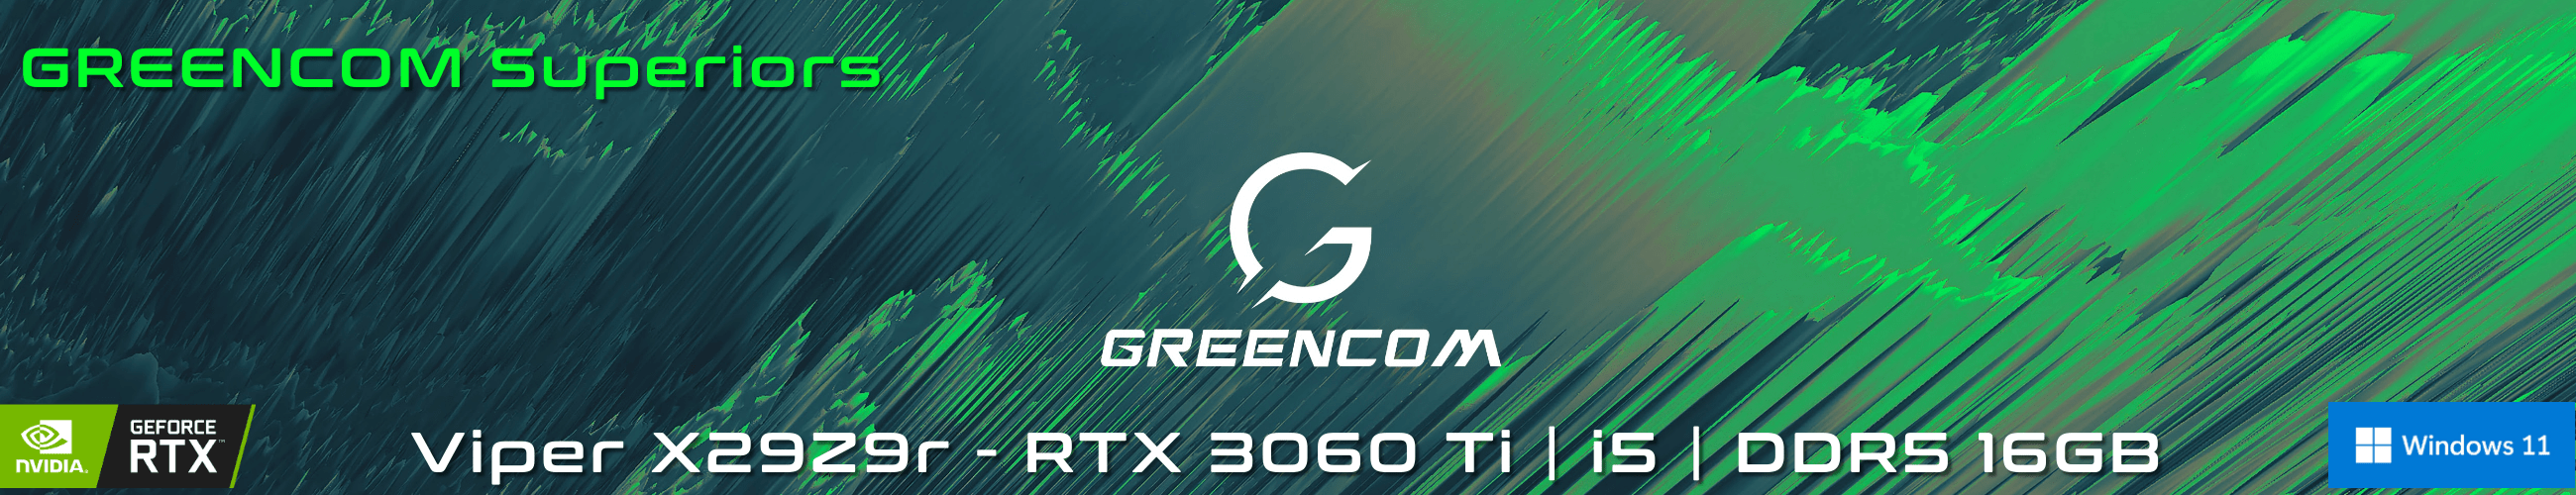 Greencom VIPER X29Z9r